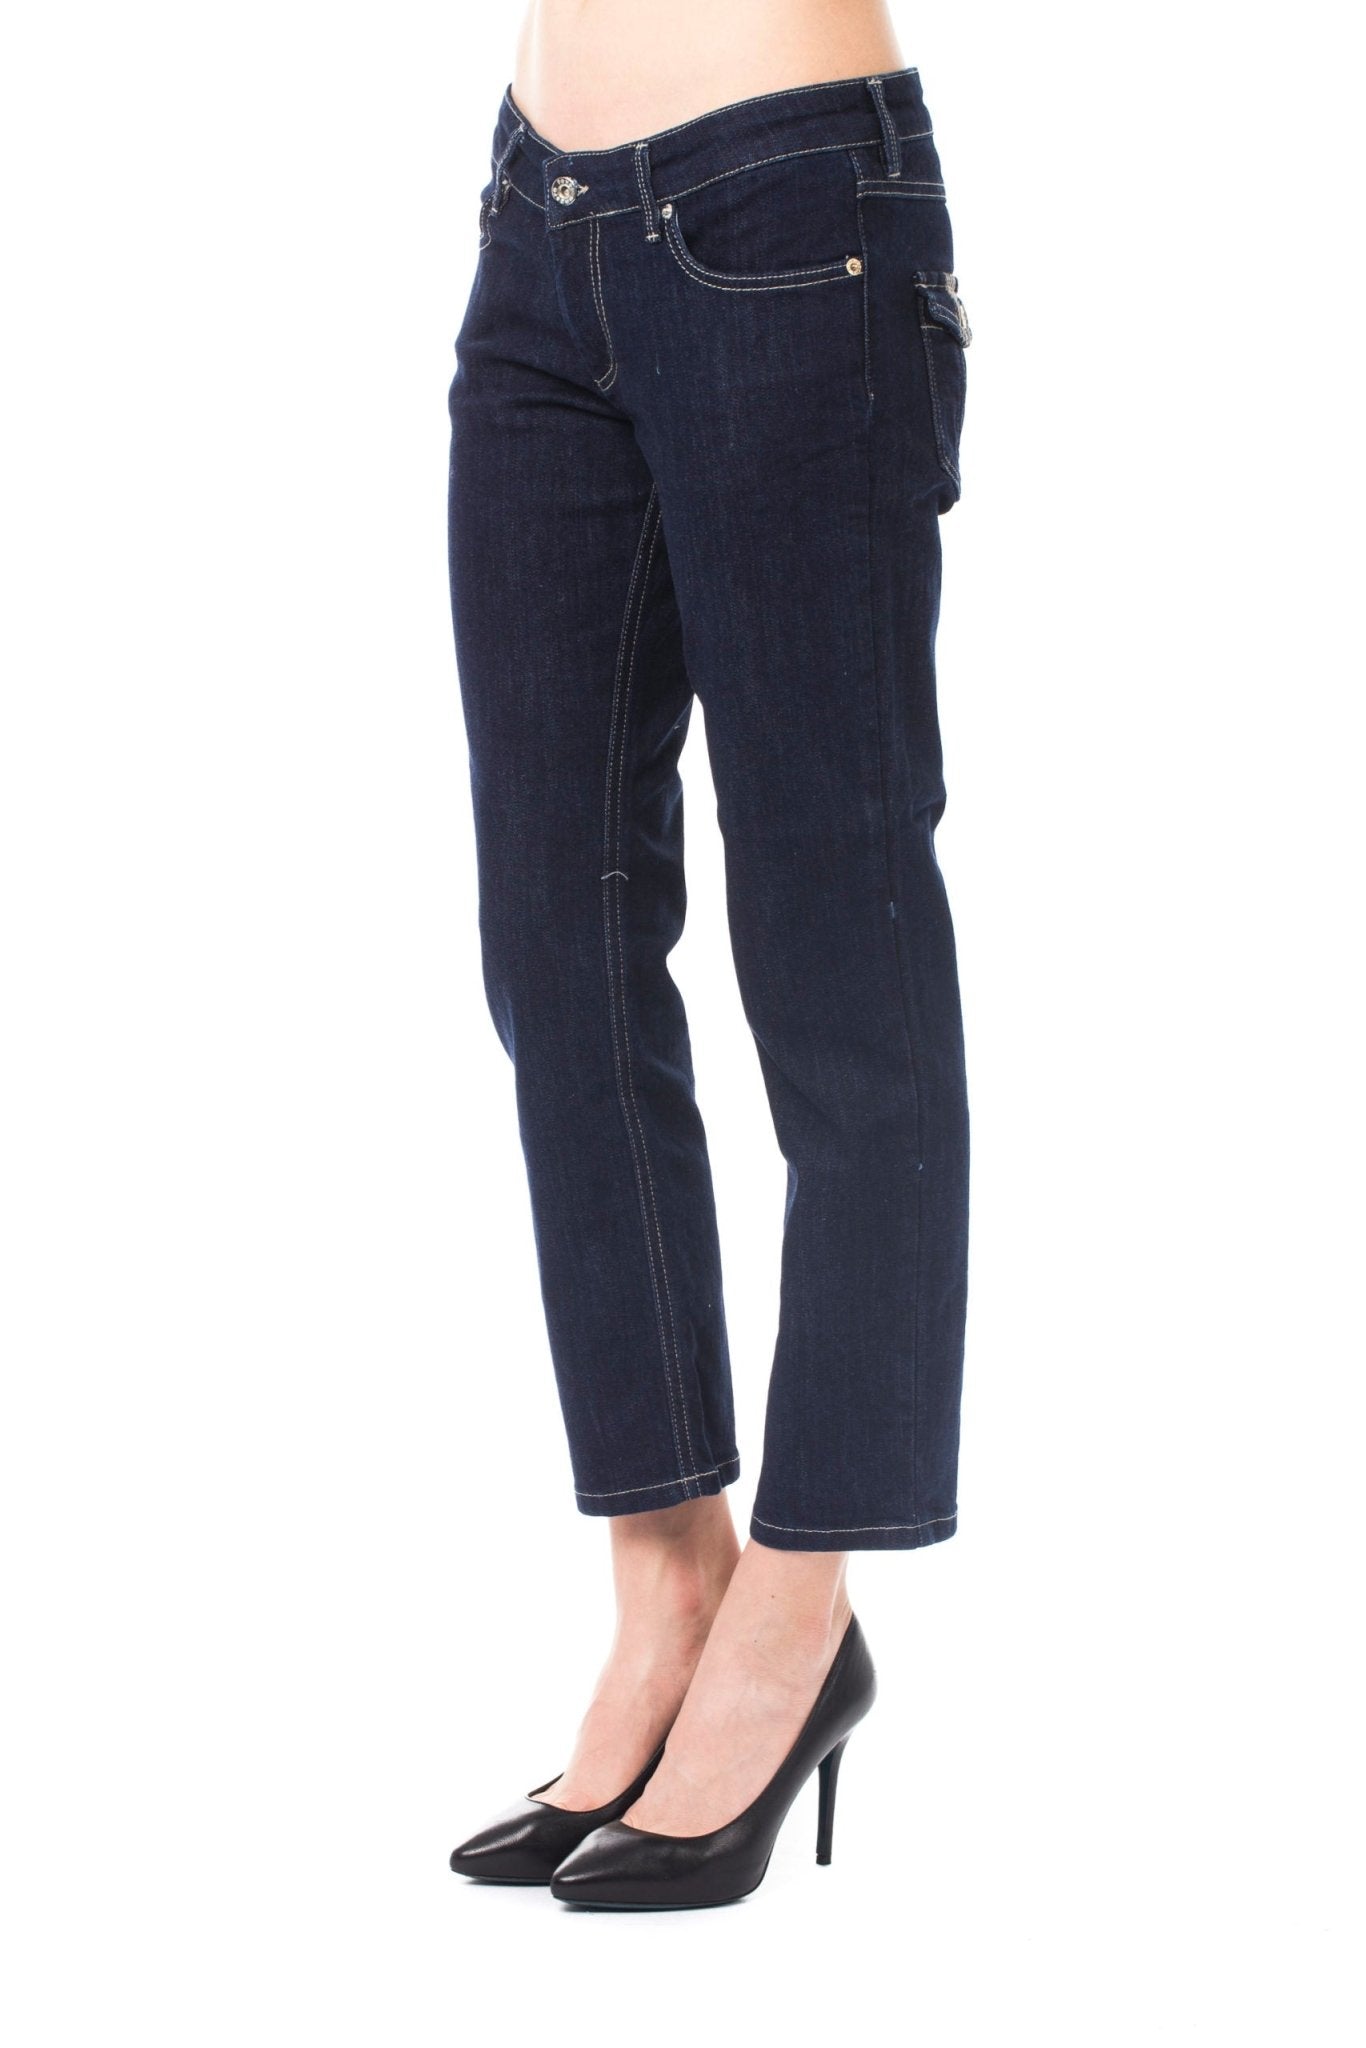 Ungaro Fever Blue Cotton Jeans & Pant - Fizigo